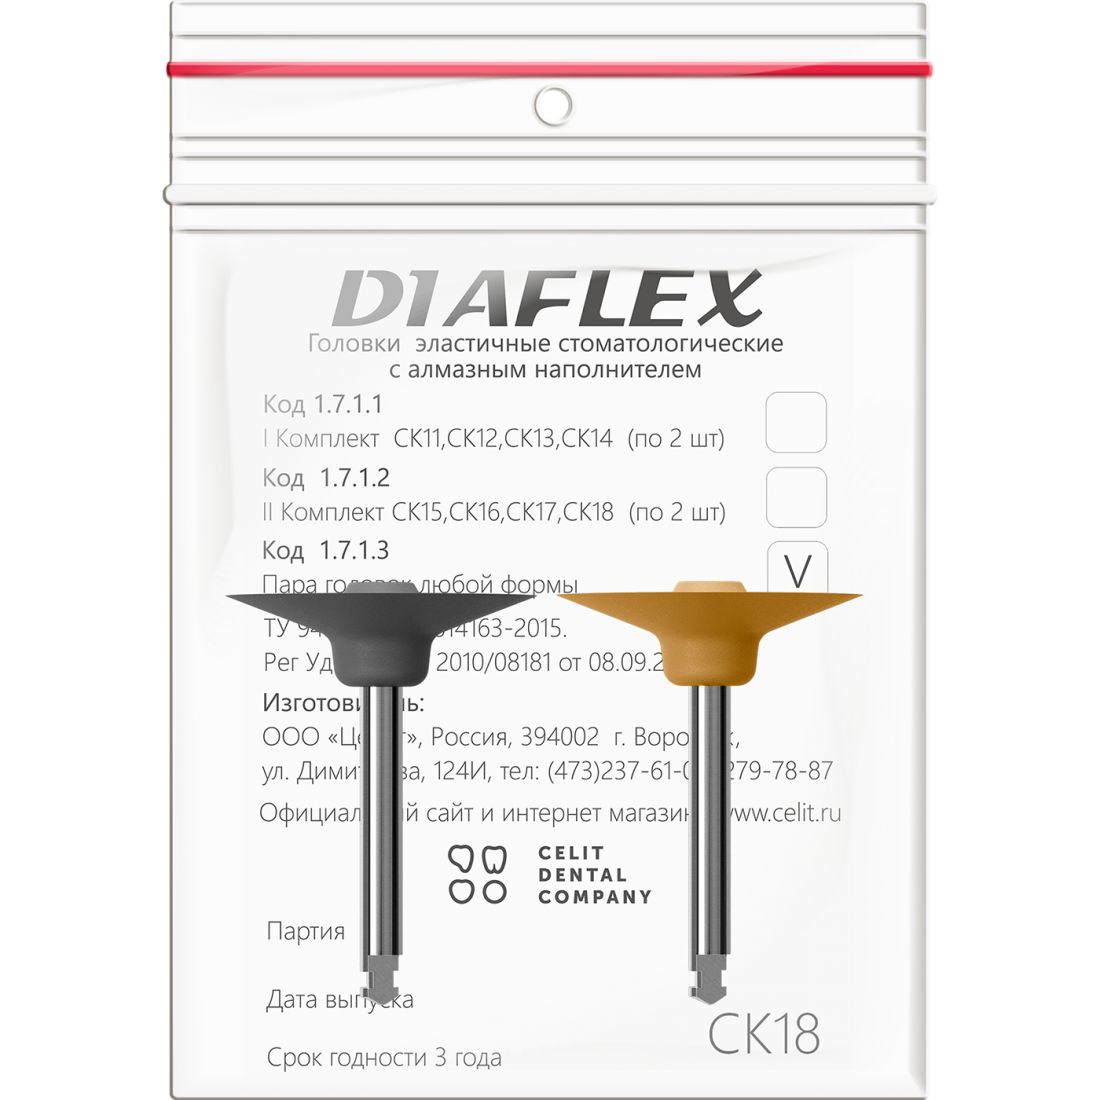 Diaflex композит СК18 - головки Диафлекс для обработки композитов (2шт)